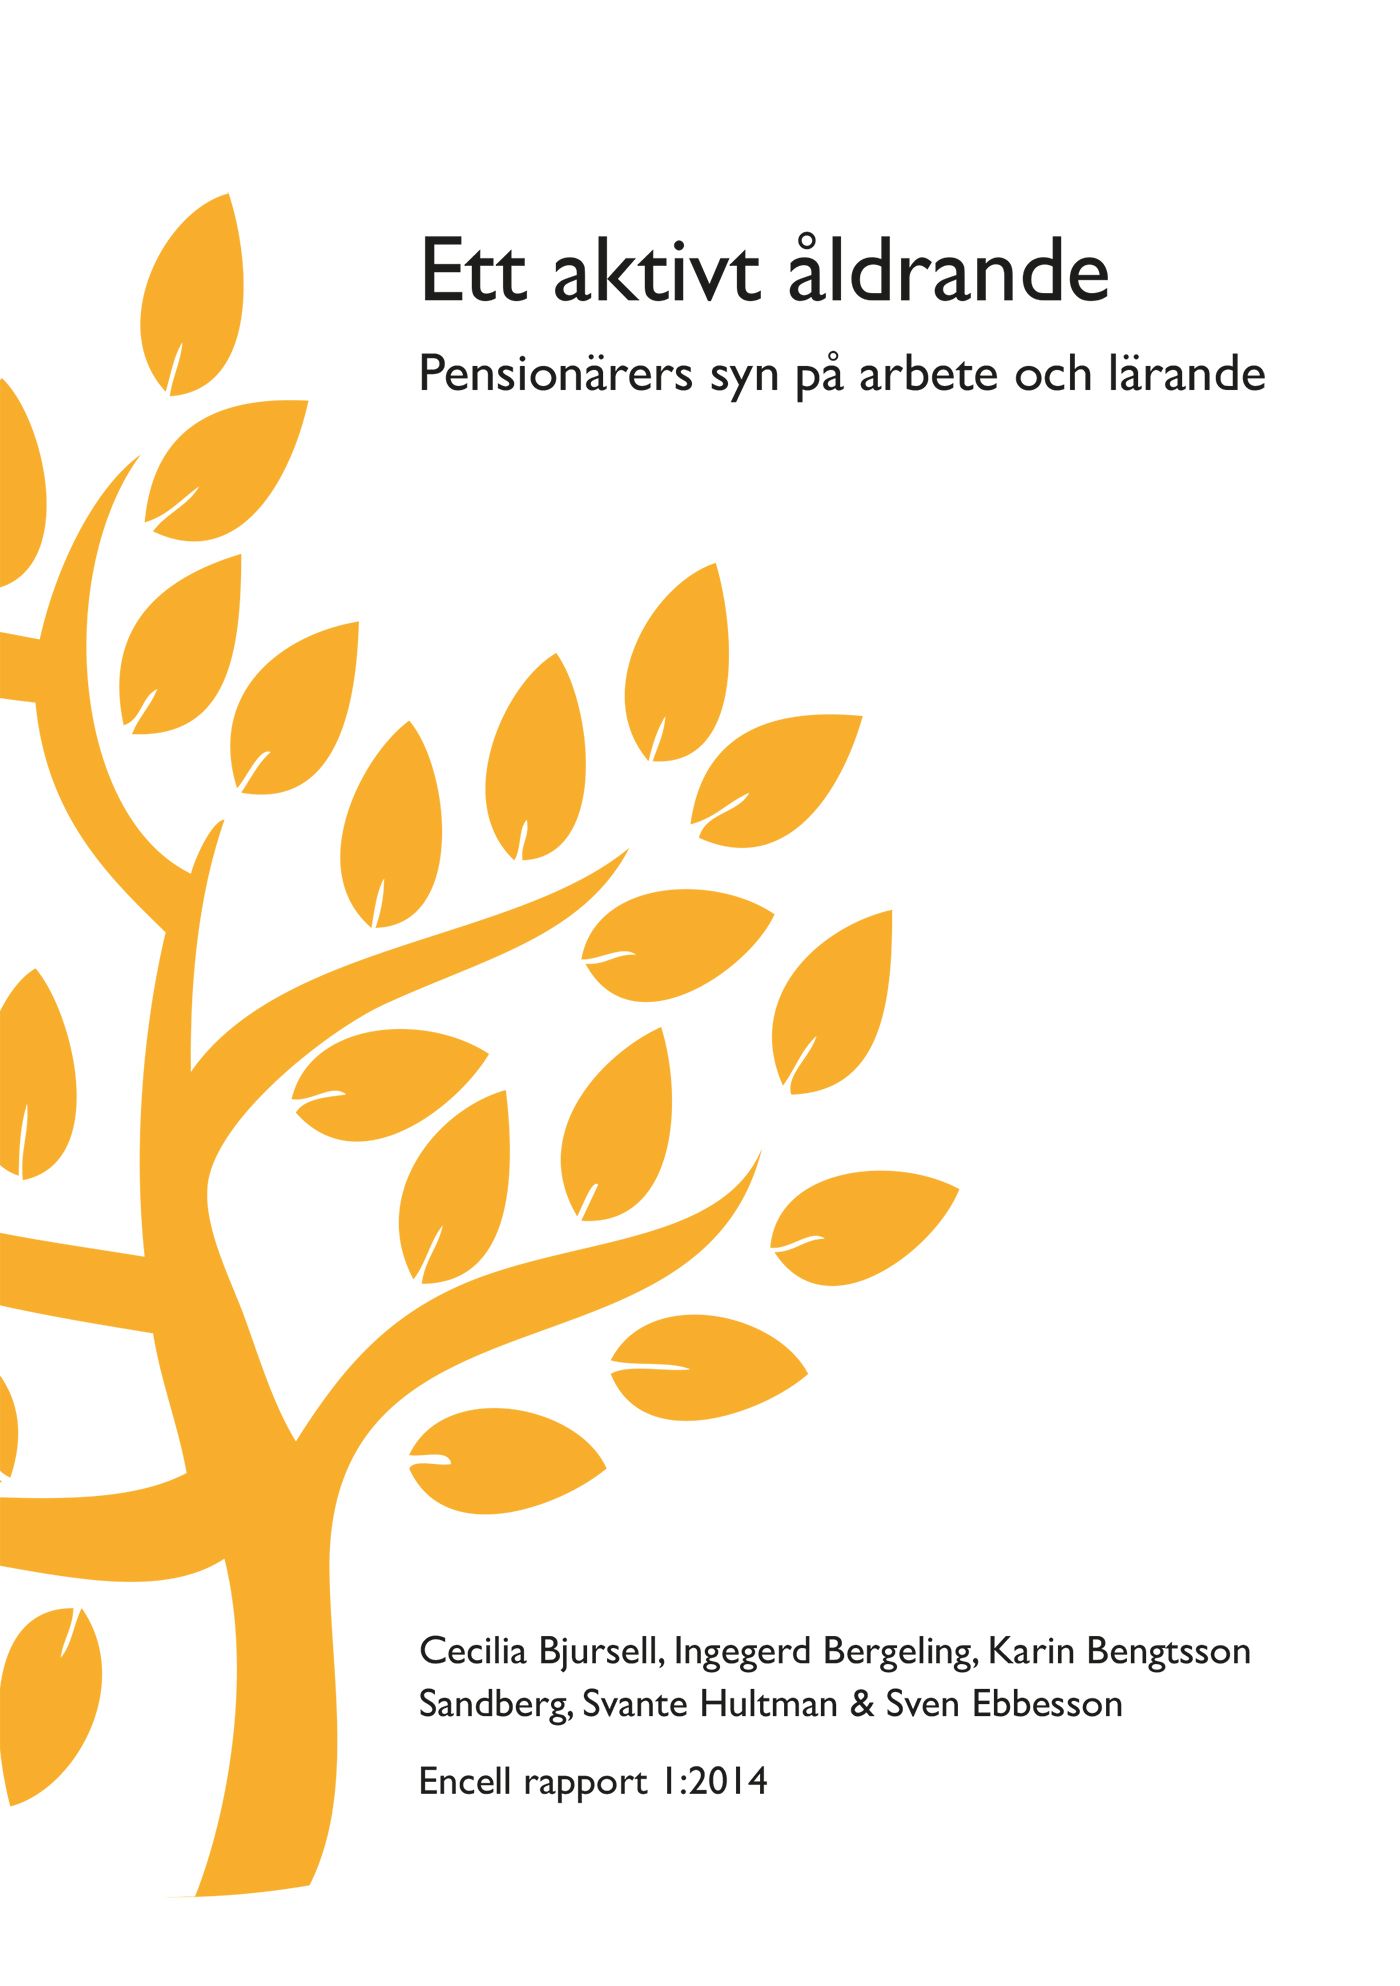 Ett aktivt åldrande, e-bok av Karin Bengtsson Sandberg, Ingegerd Bergeling, Cecilia Bjursell, Sven Ebbesson, Svante Hultman